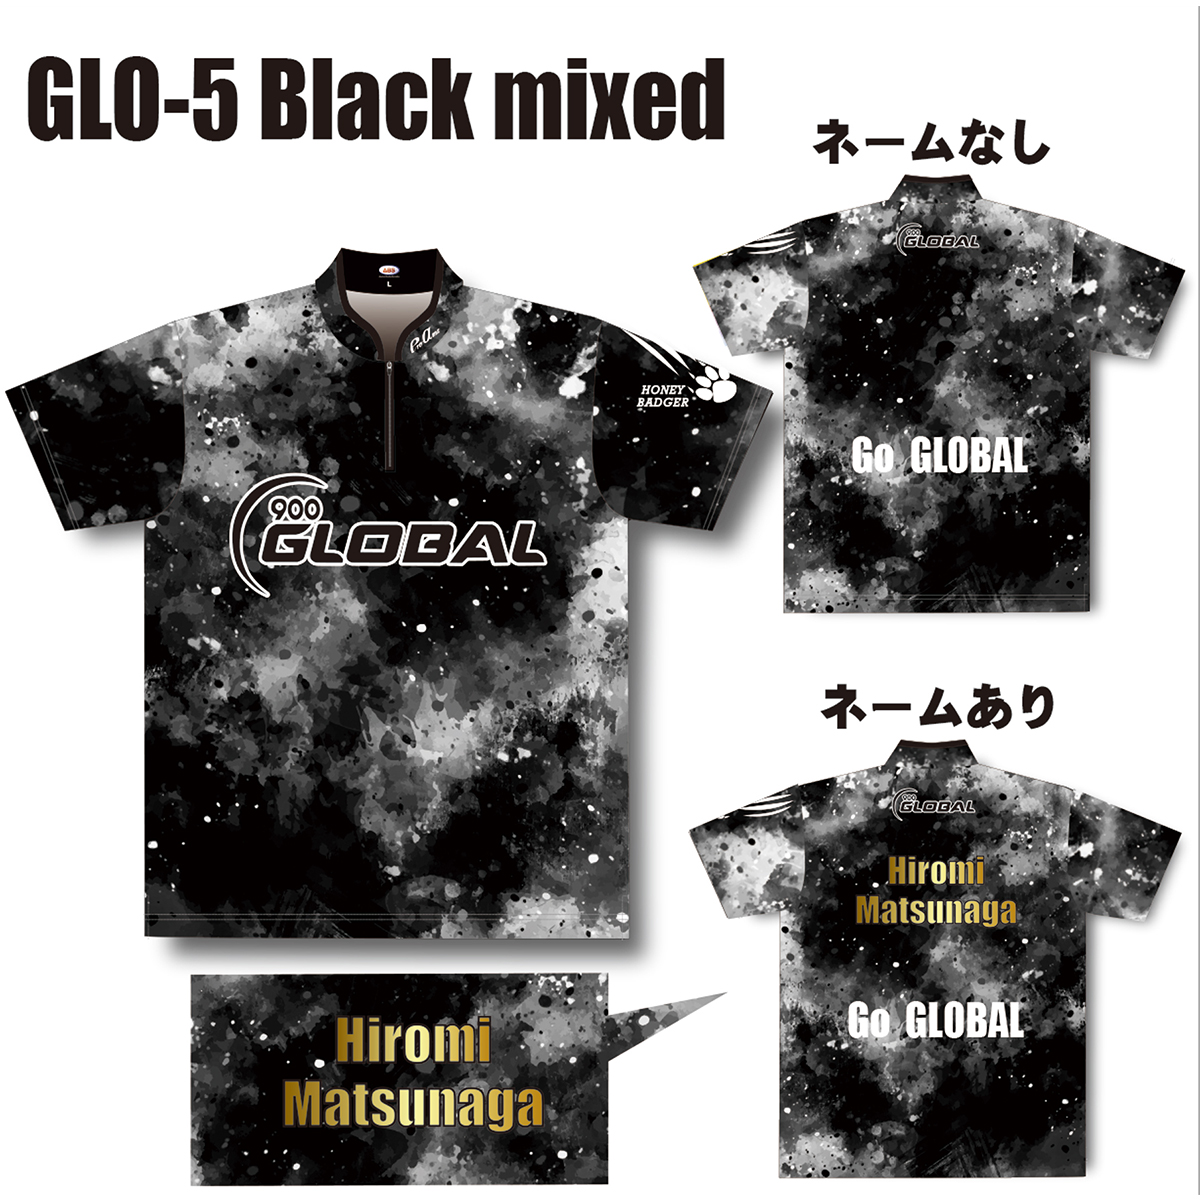 ハニーバジャーウエア(GLO-5、Black mixed)